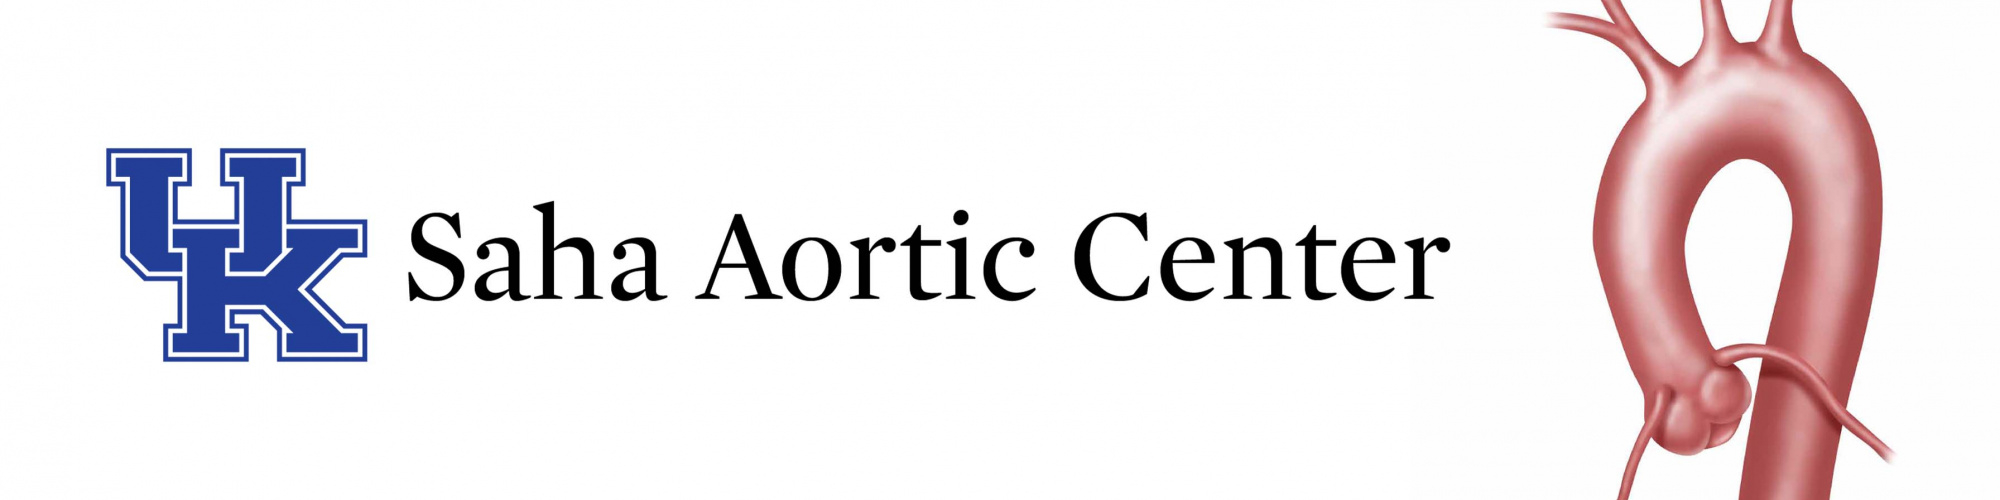 Saha Aortic Center